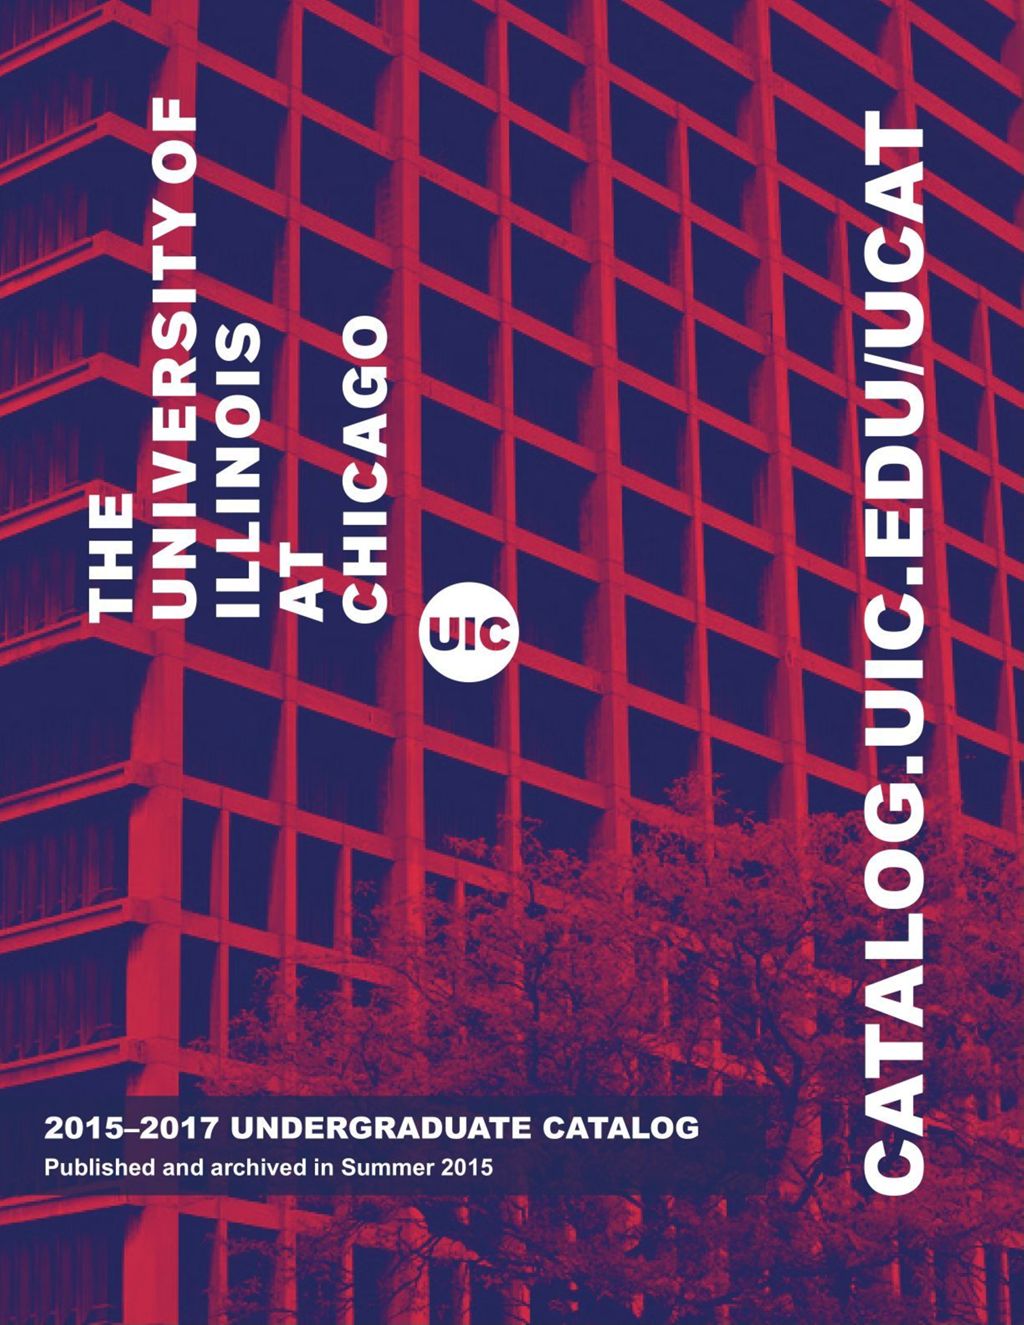 Undergraduate Catalog, 2015-2017